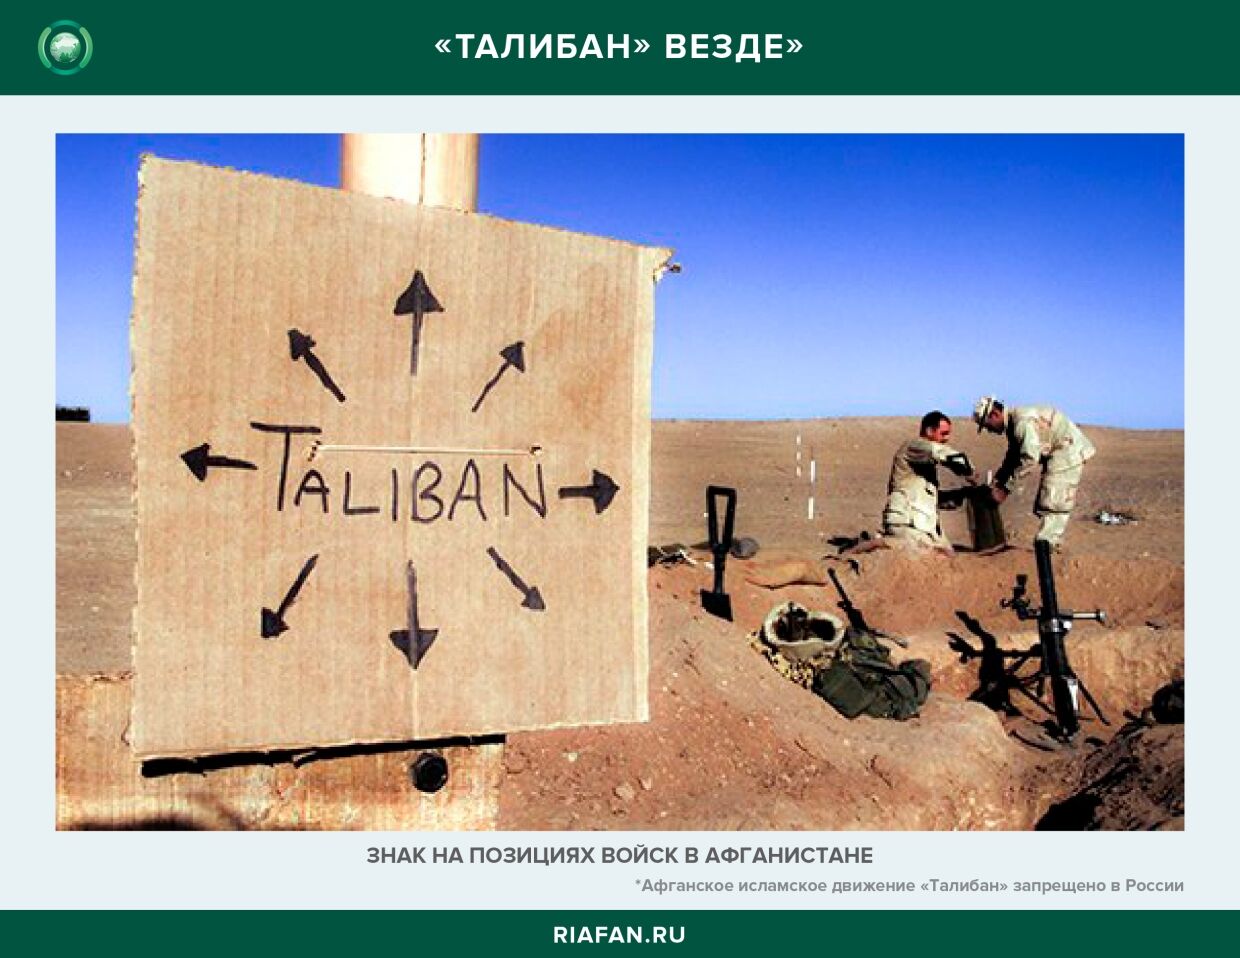 «Талибан» действительно активен практически на всей территории Афганистана.